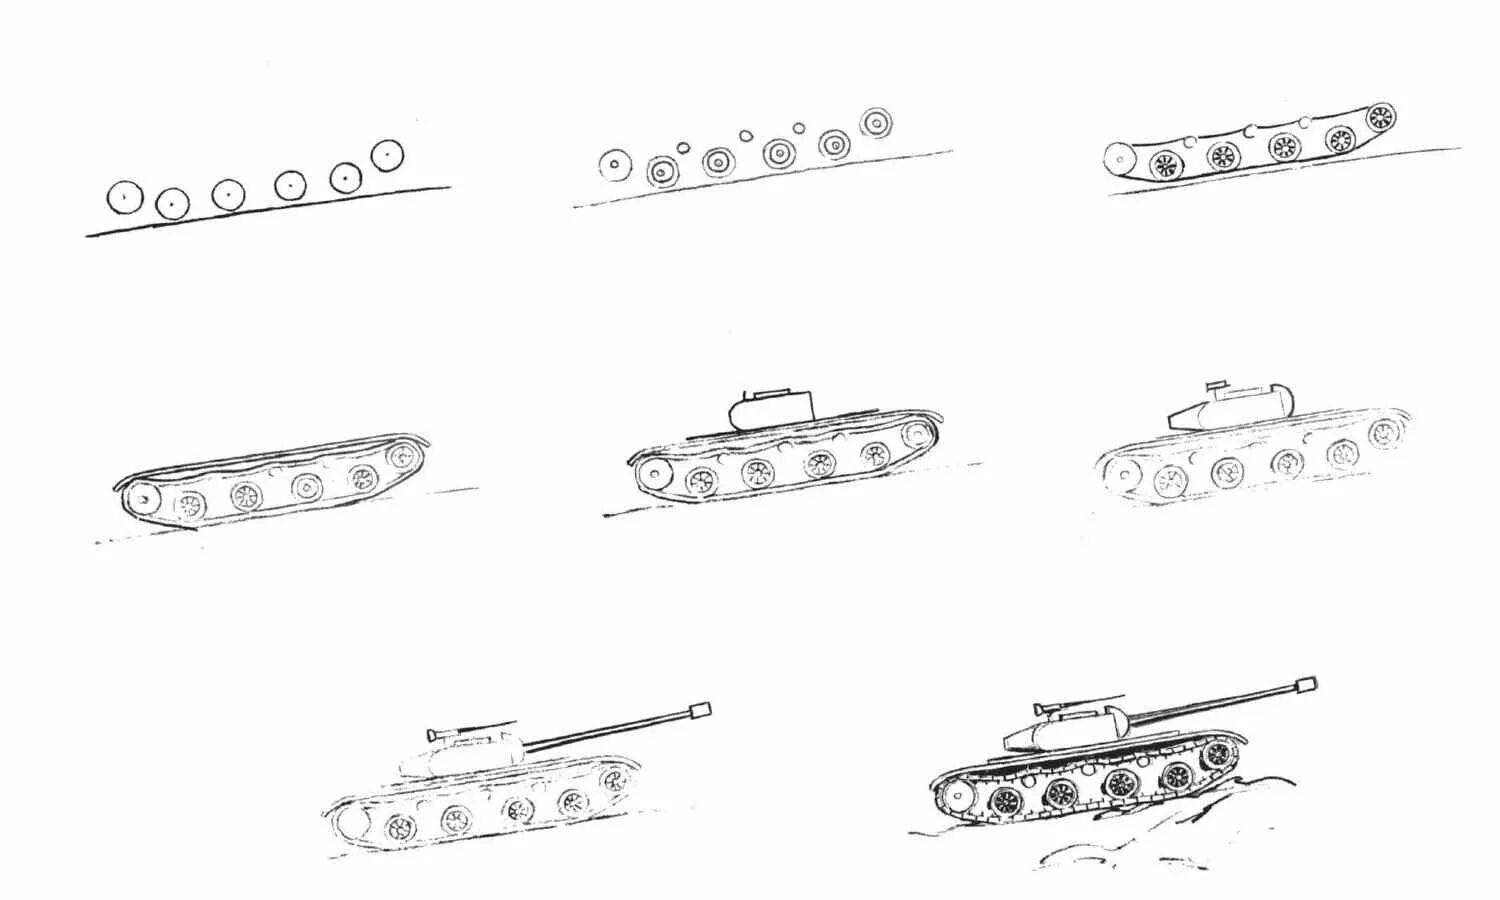 Танк т34 рисунок поэтапный. Т34 танк рисунок пошагово. Поэтапное рисование танка т34. Танк т-34 рисунок поэтапно.